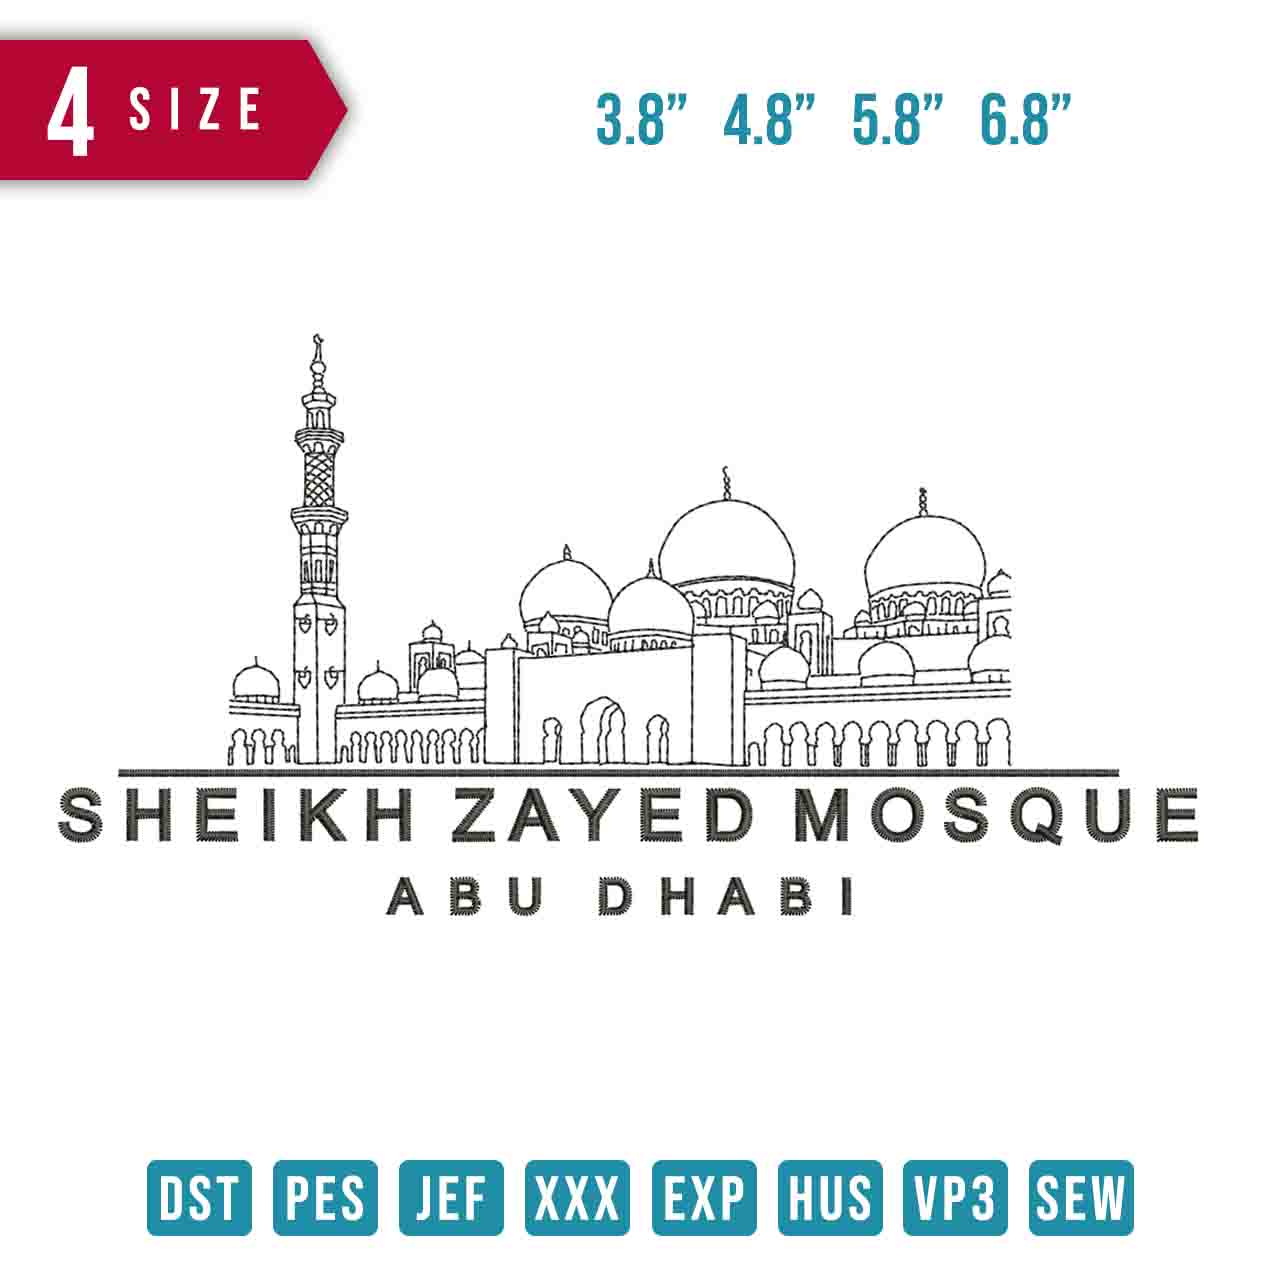 Syaikh Zayed Mosque